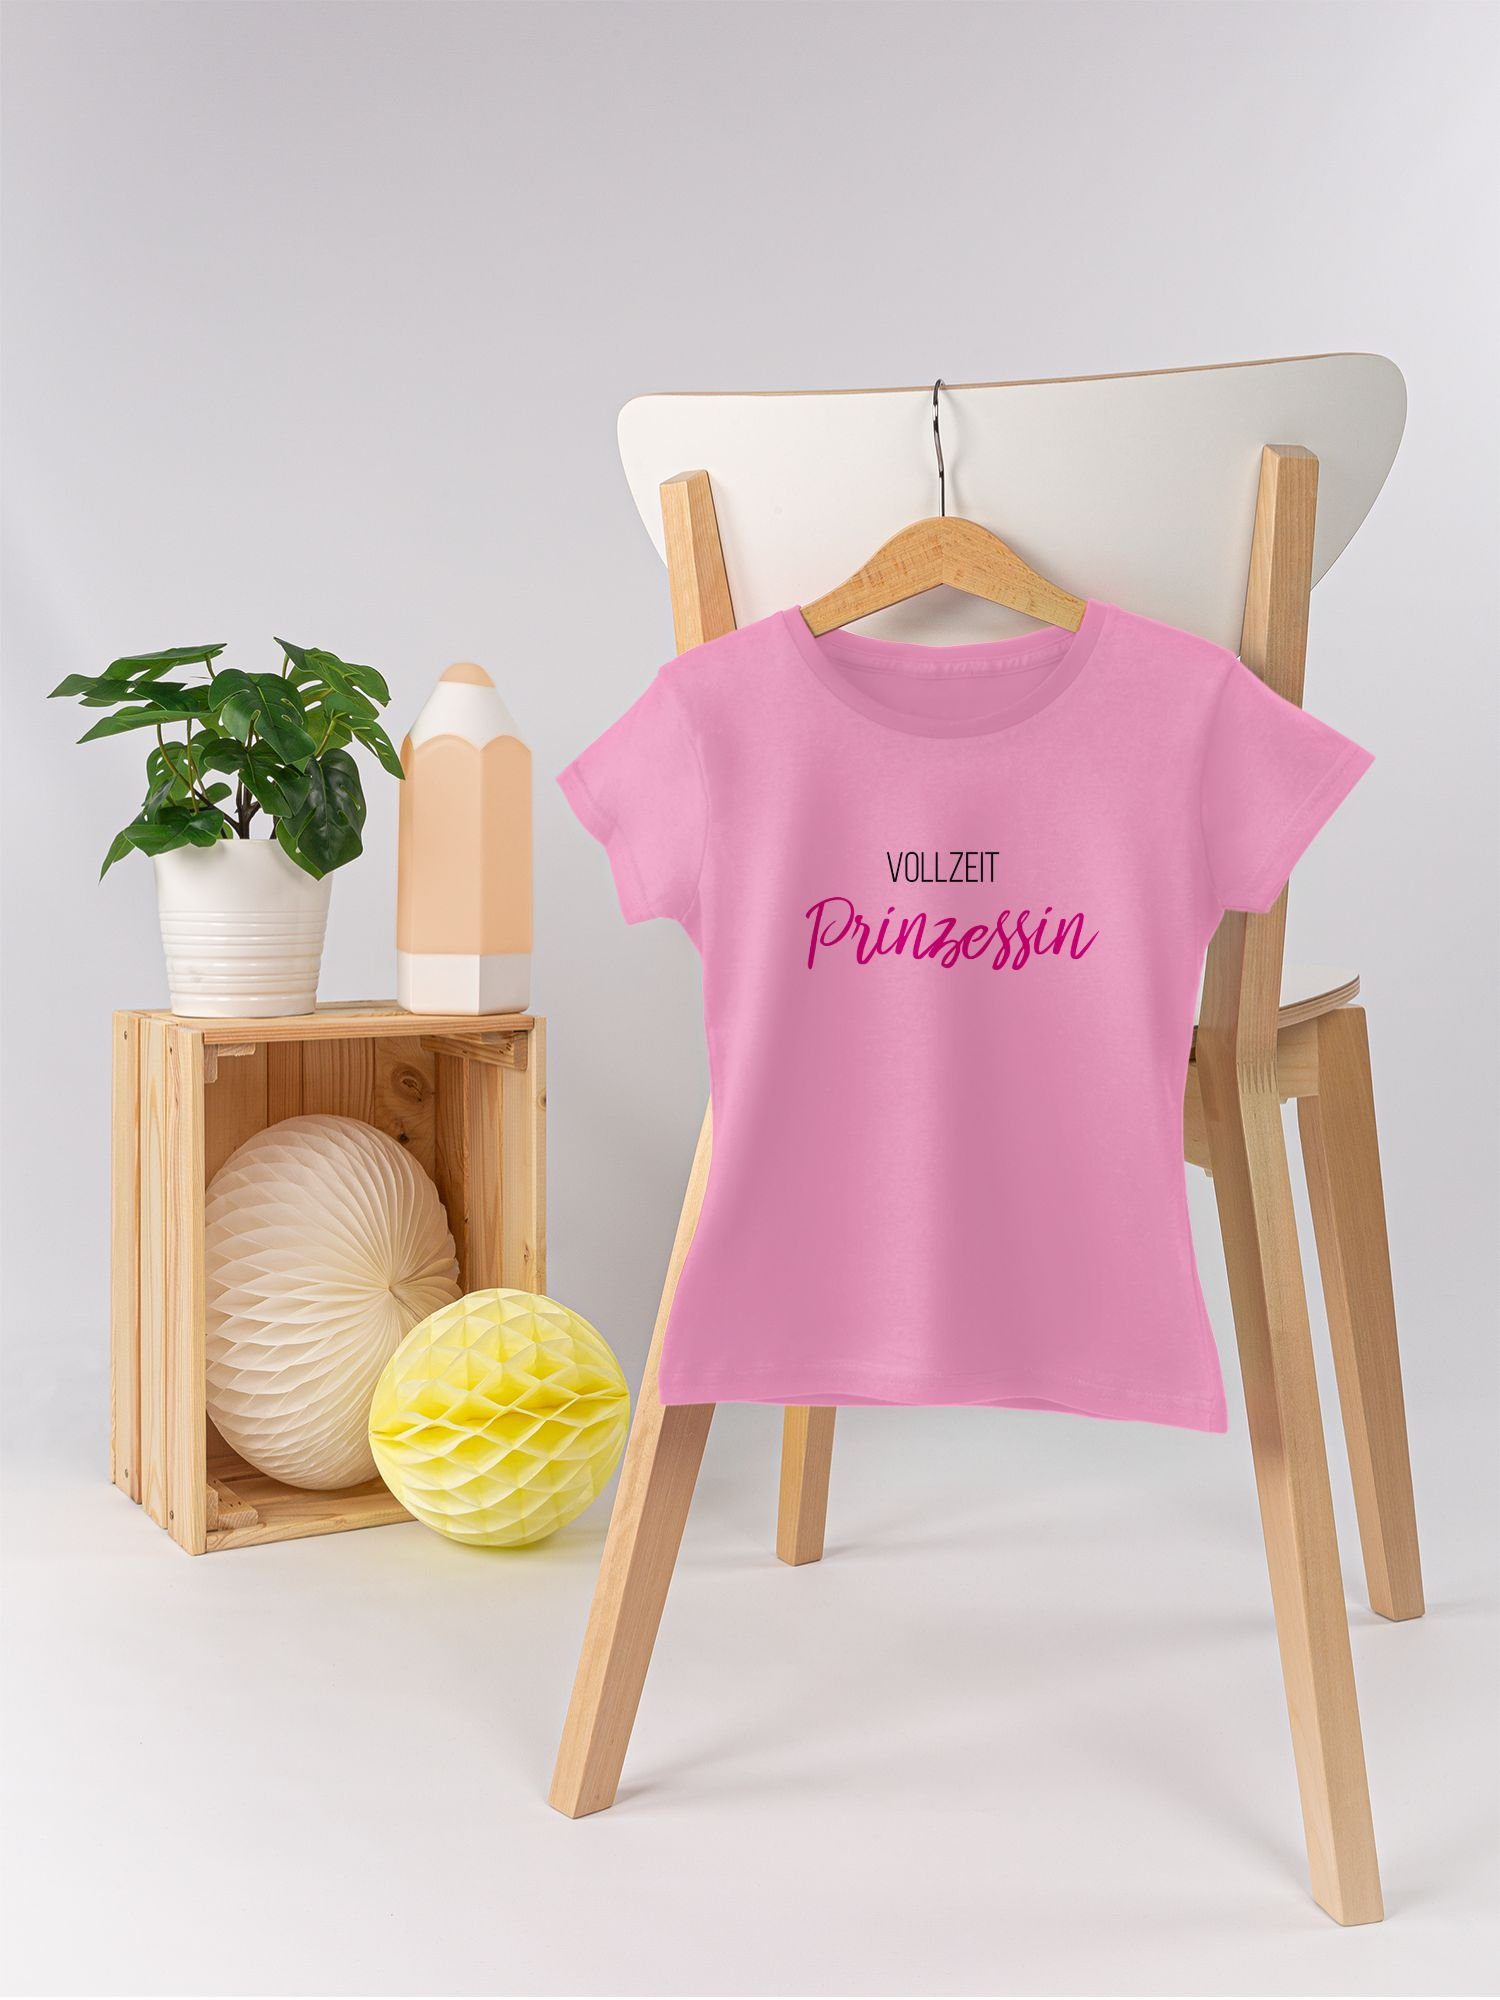 T-Shirt Rosa 1 Statement Shirtracer Sprüche Vollzeit Kinder Prinzessin